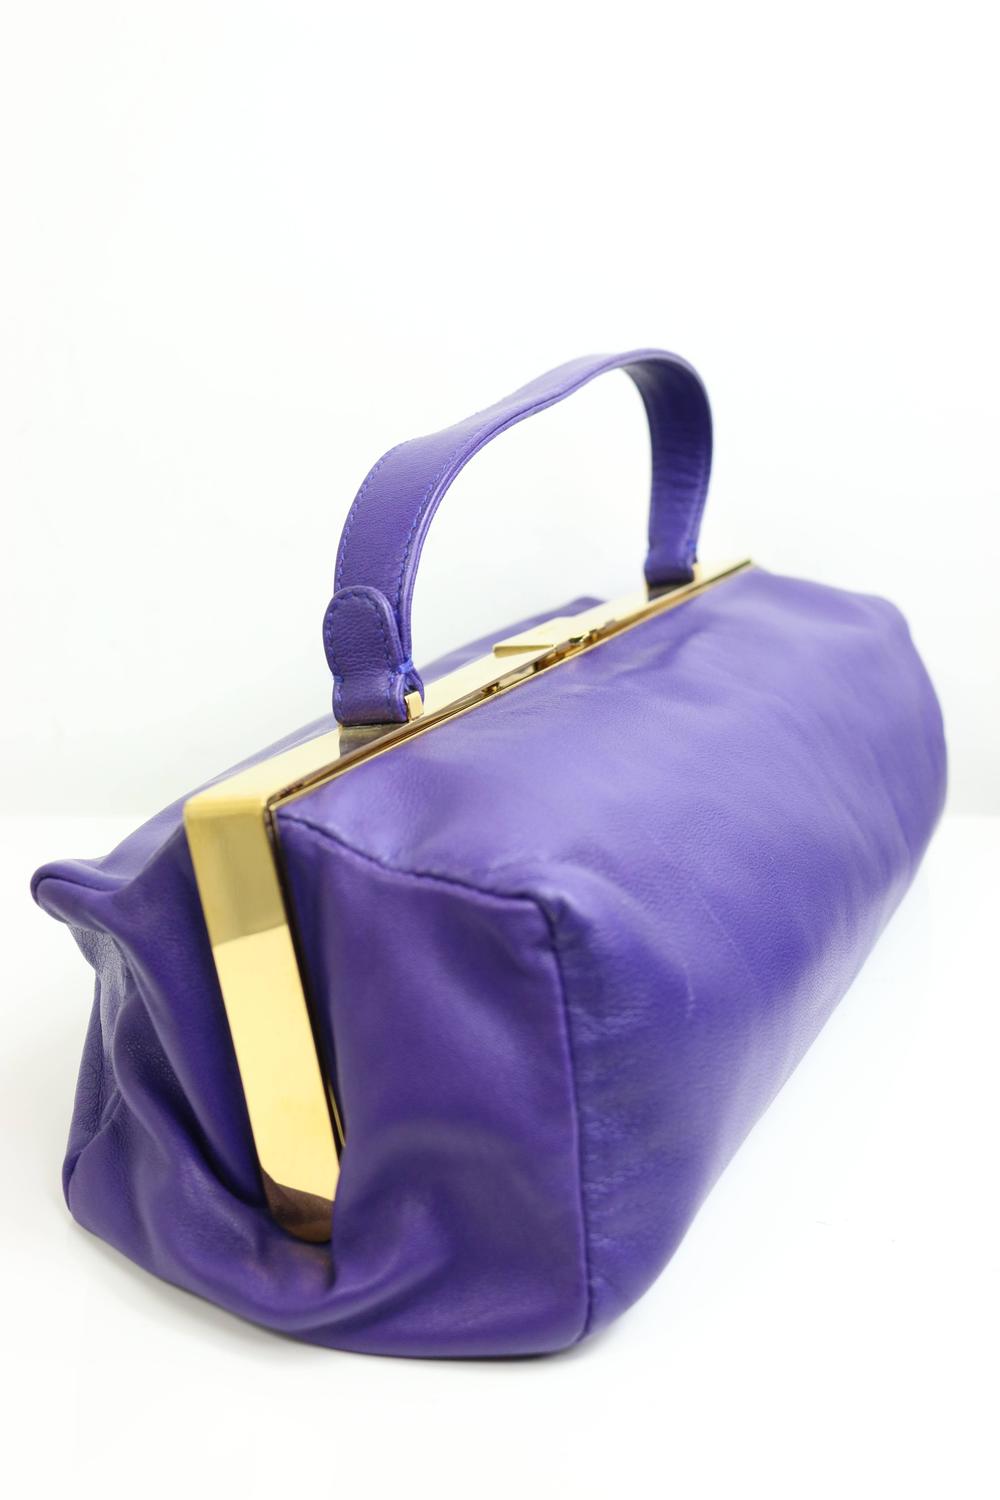 Miu Miu Purple Leather Handbag For Sale at 1stdibs